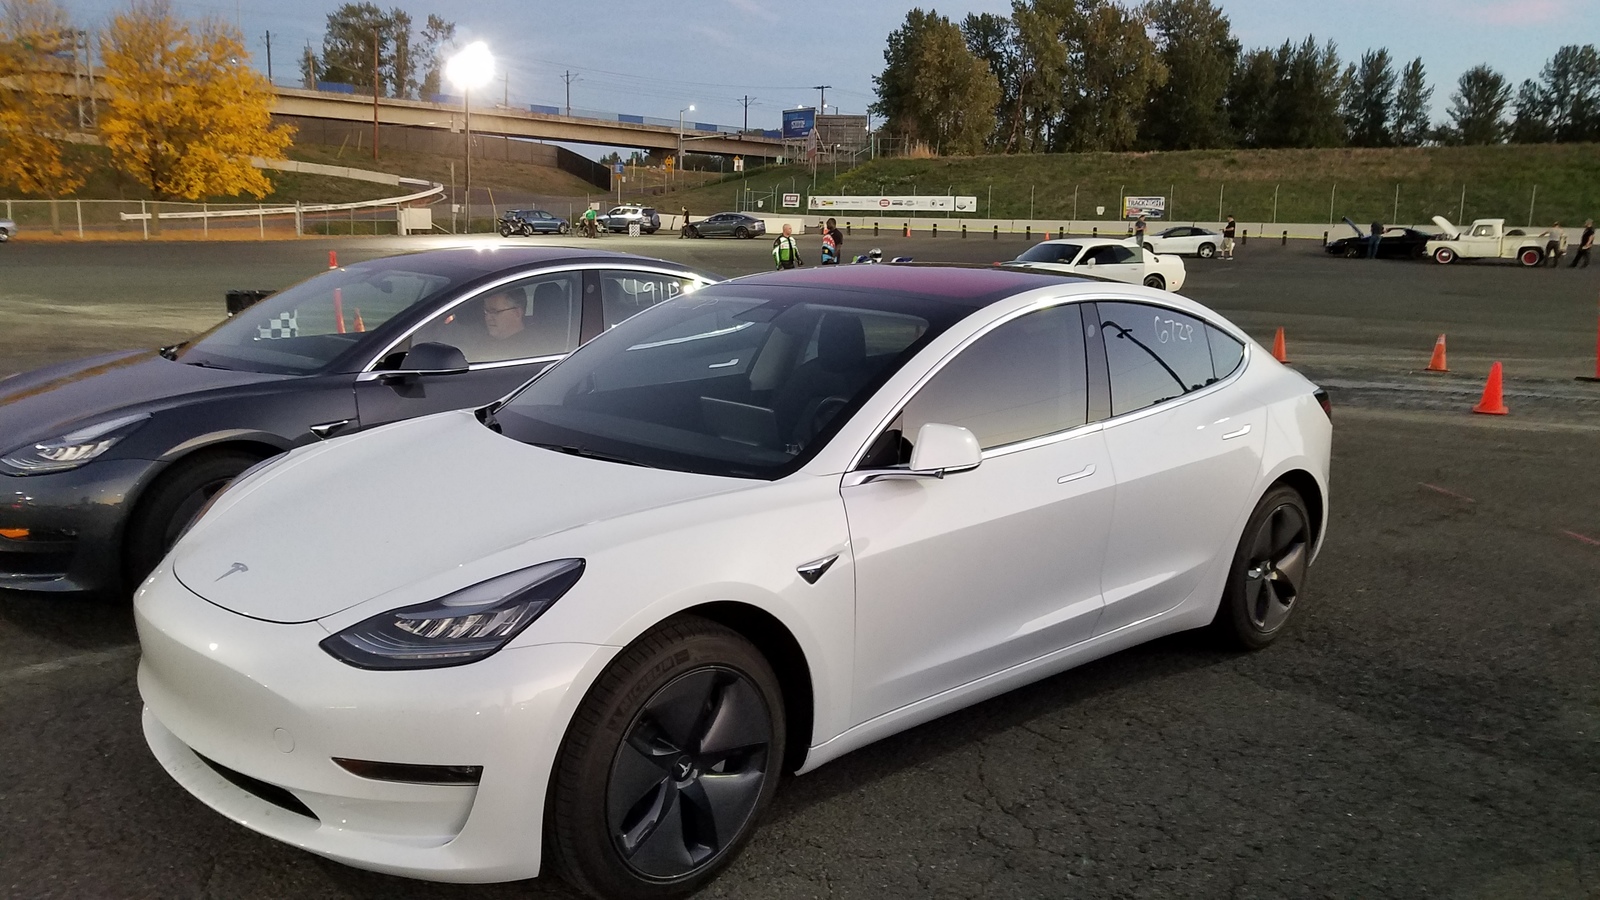 Stock 2018 Tesla Model 3 RWD Long Range 1/4 mile trap speeds 0-60 - DragTimes.com